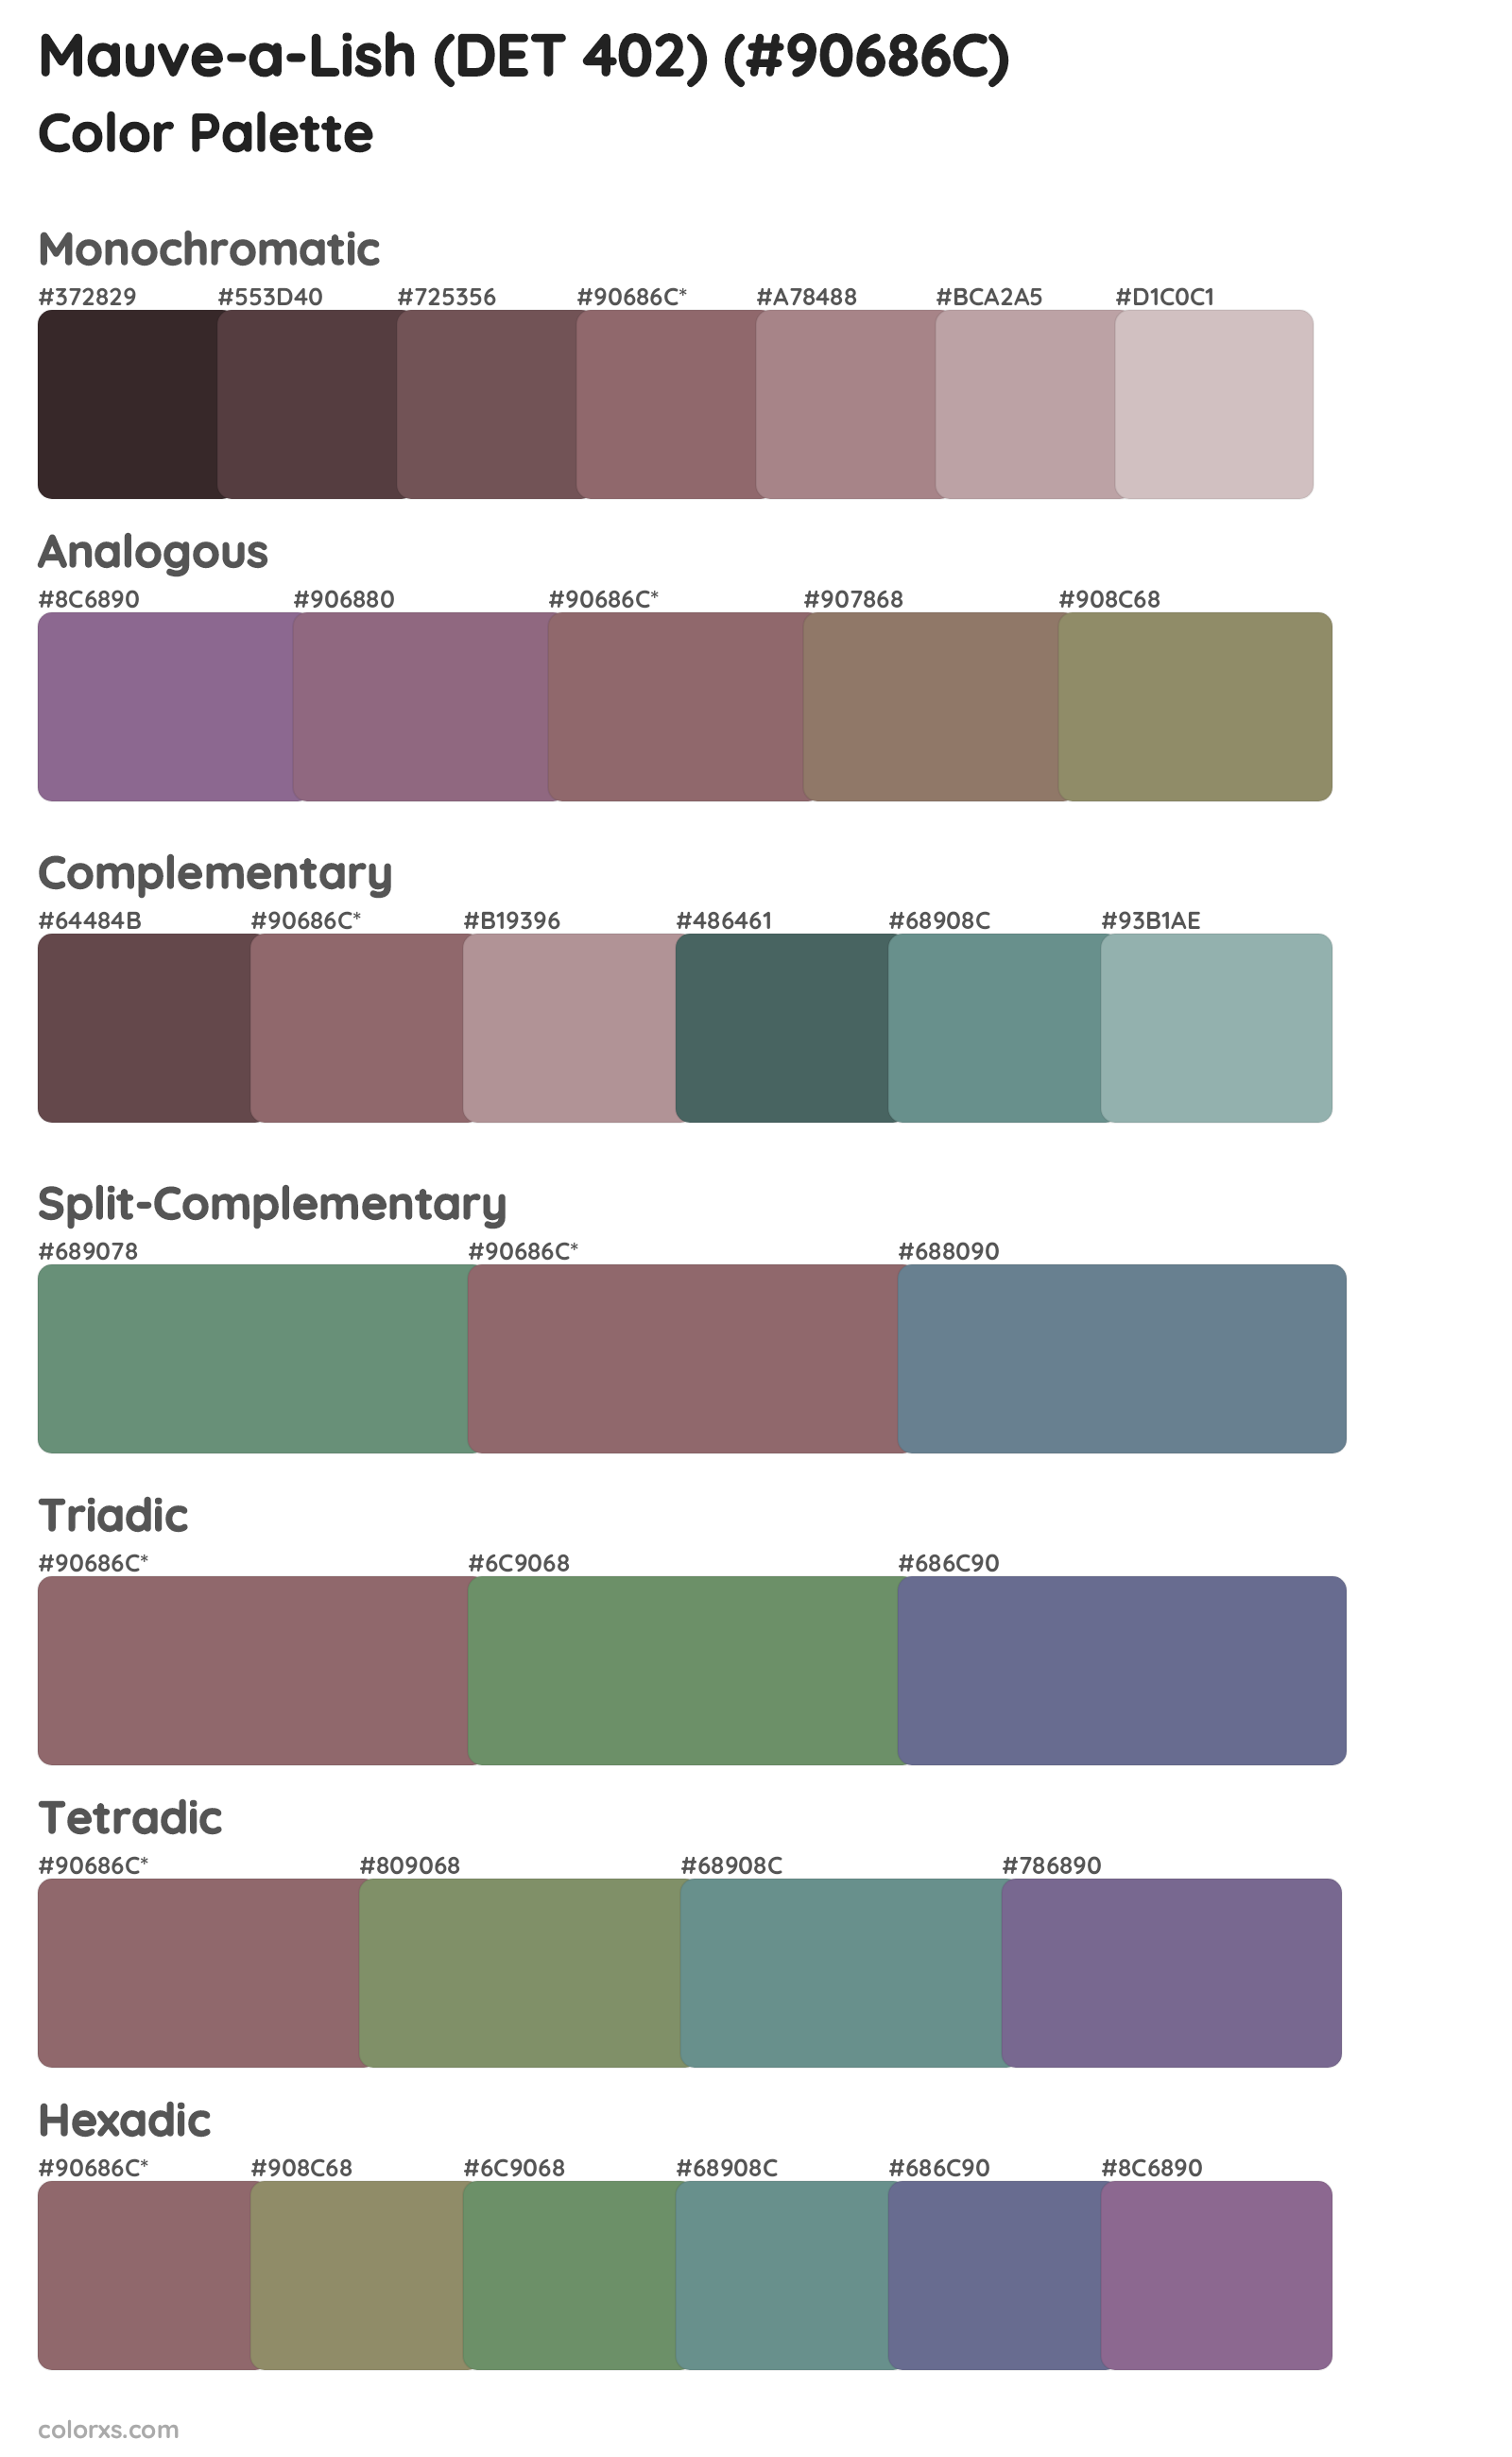 Mauve-a-Lish (DET 402) Color Scheme Palettes